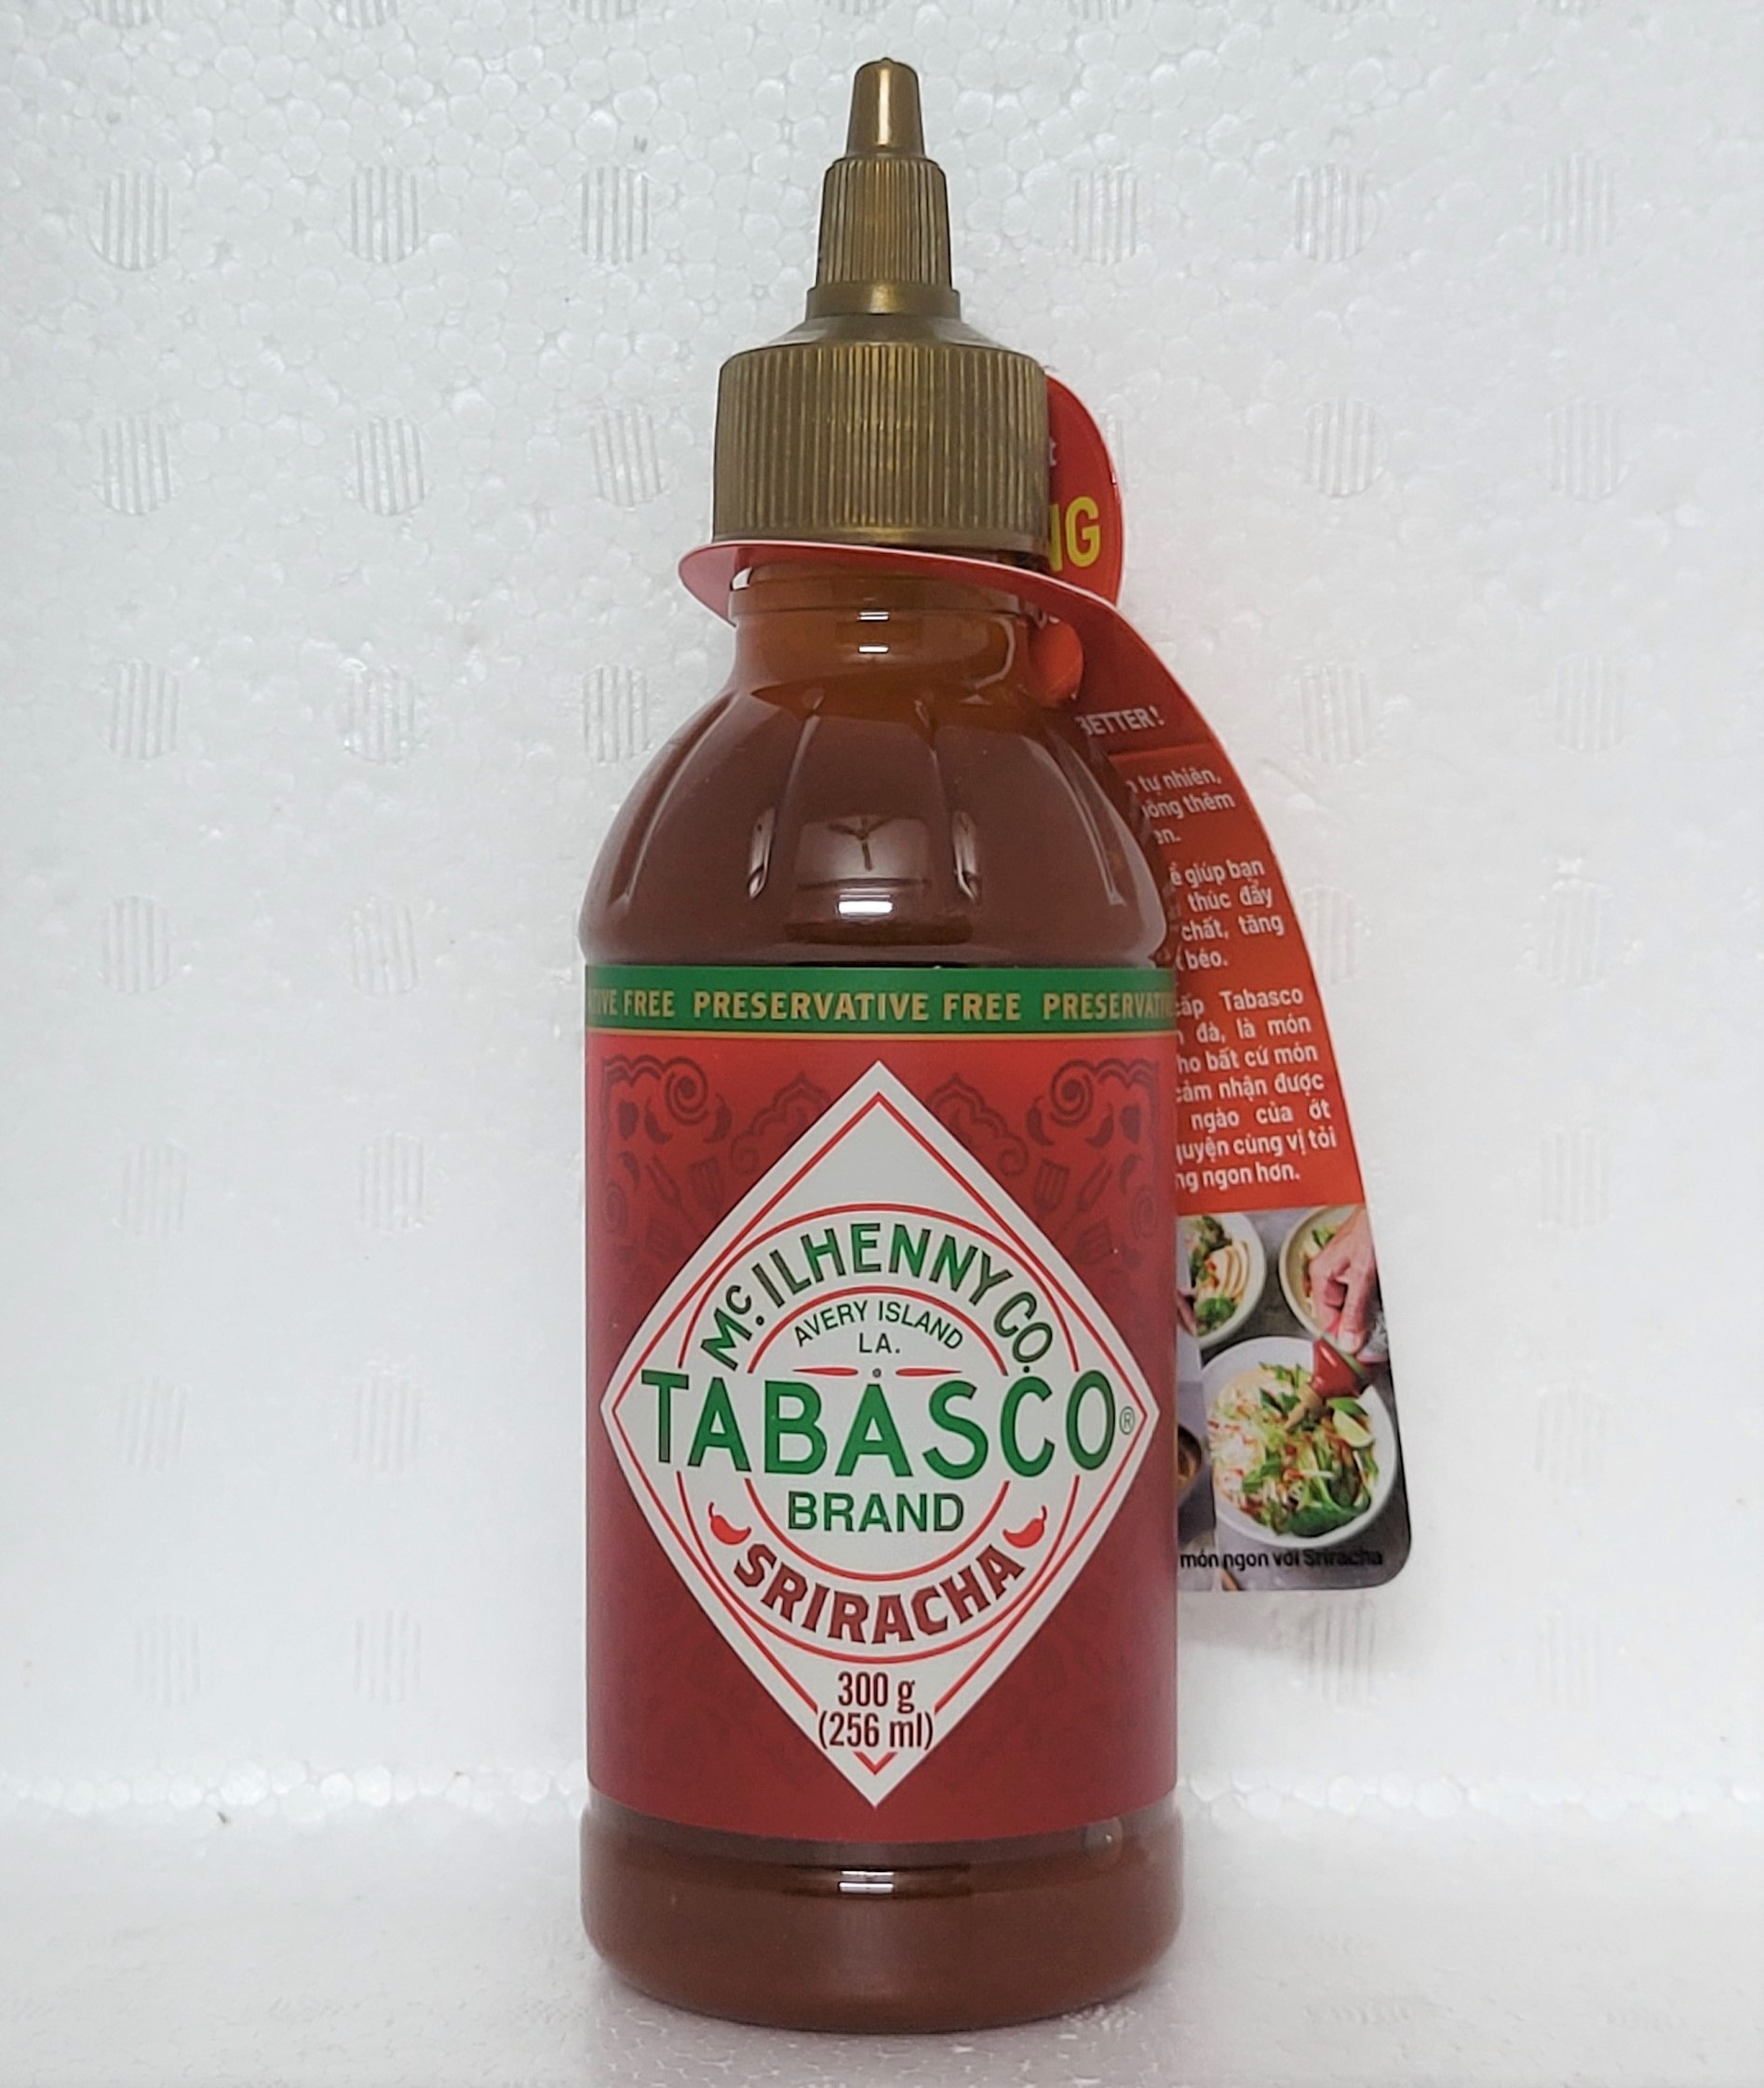 Chai 300g TƯƠNG ỚT SRIRACHA TỪ ỚT JALAPENO USA TABASCO Sriracha Chilli